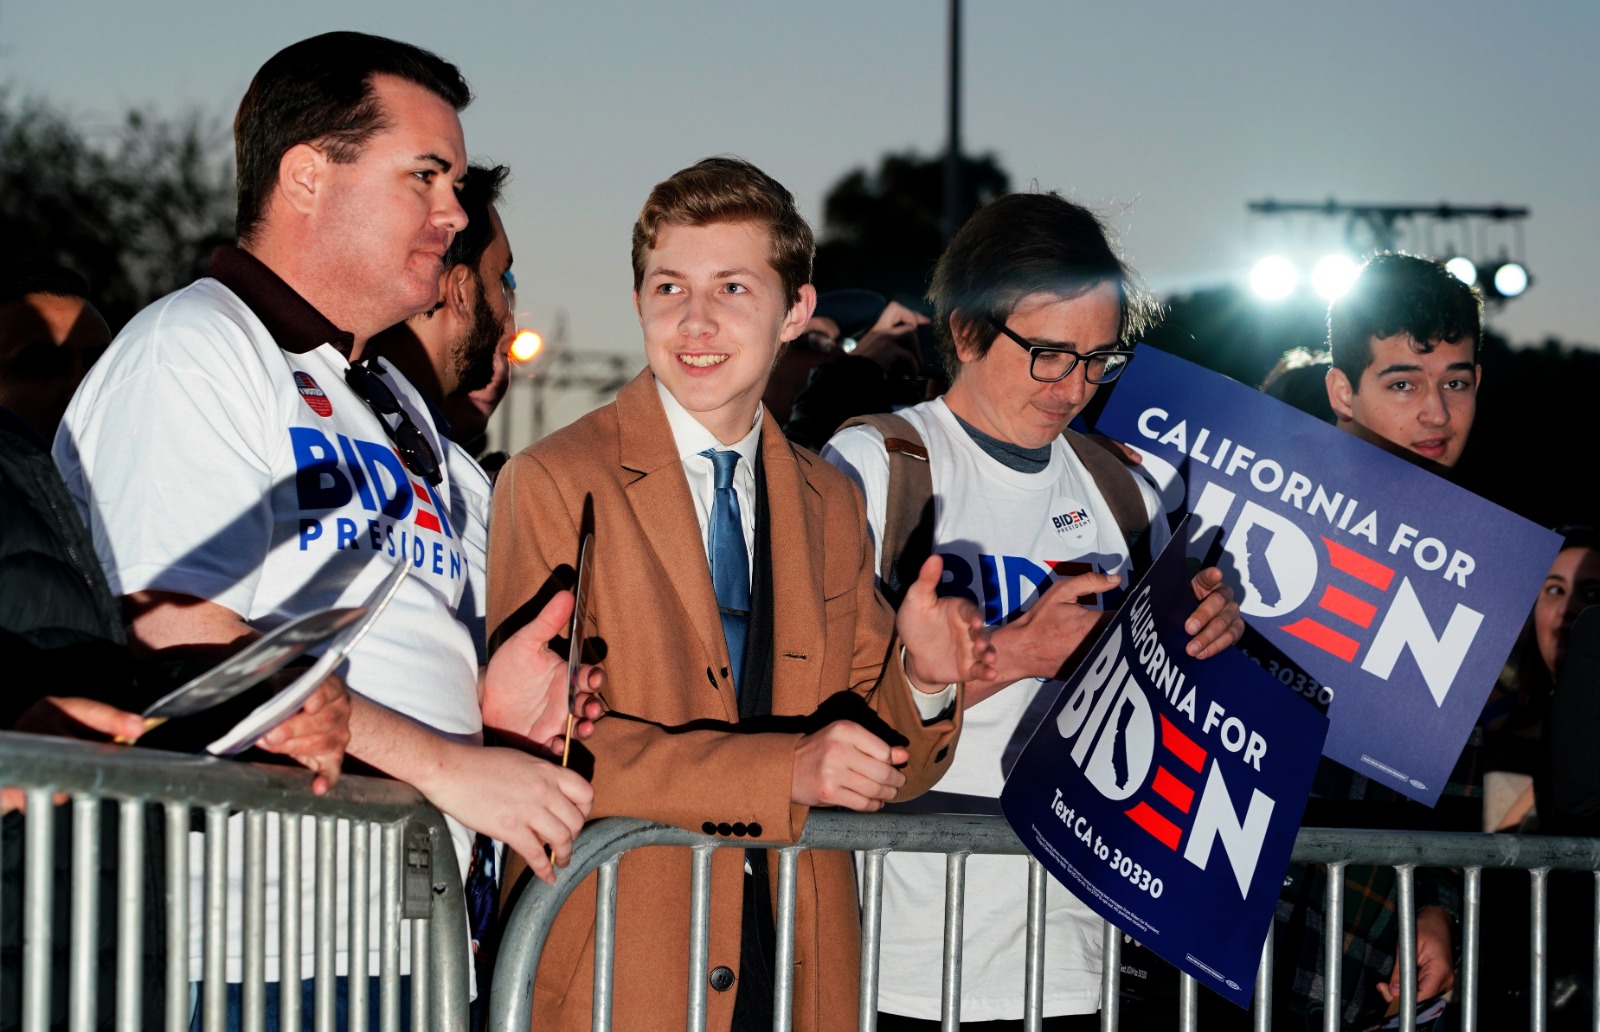 مؤيدون لجو بايدن، المرشح الديمقراطي للرئاسة الأميركية في 2020، خلال الانتخابات التمهيدية في لوس أنجلوس، بولاية كاليفورنيا. 3 مارس 2020 - Reuters